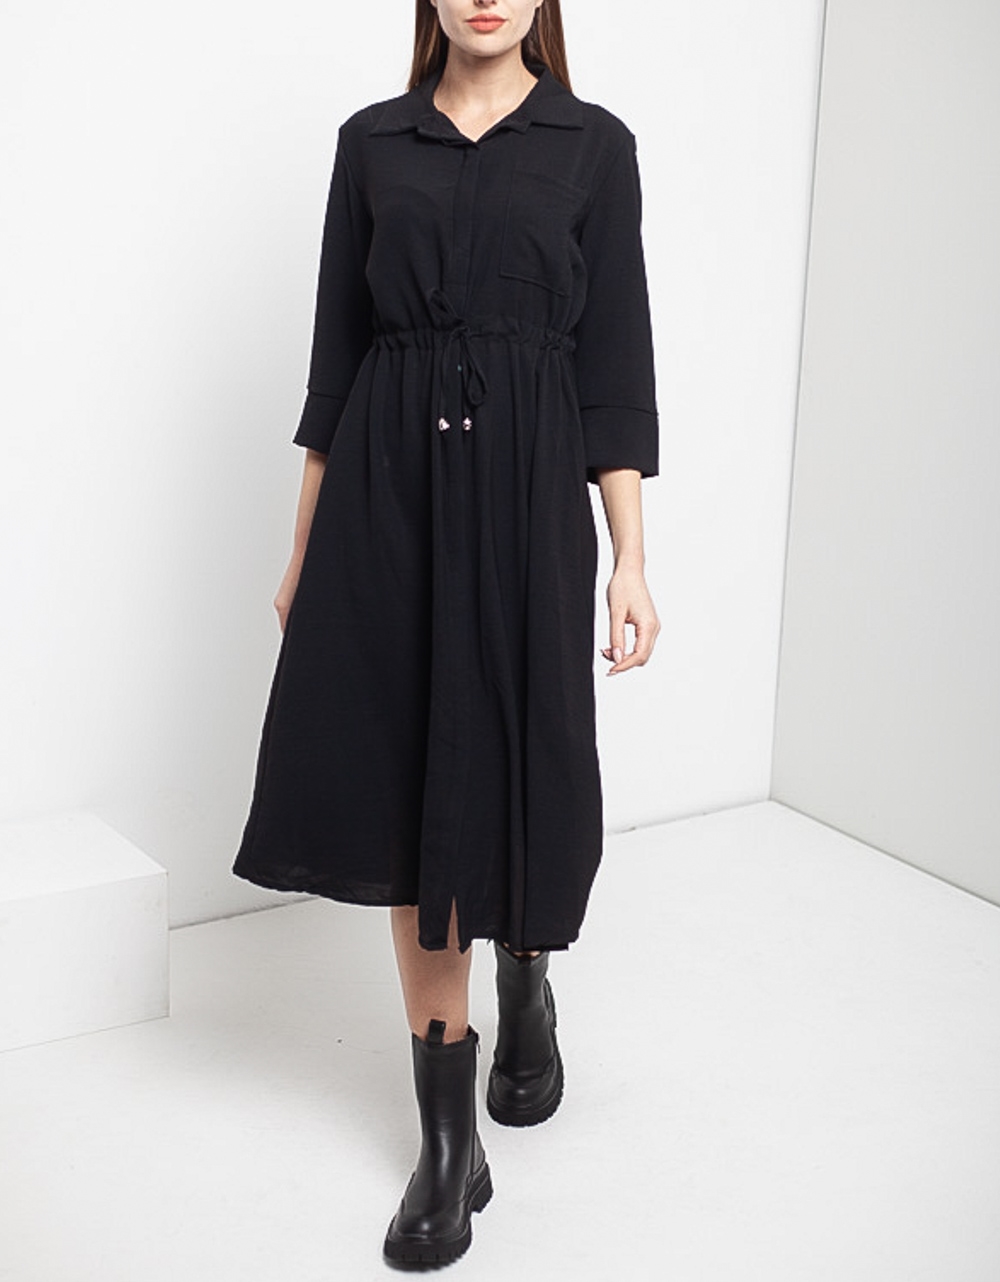 Εικόνα από Γυναικείο φόρεμα midi με κουμπιά Μαύρο